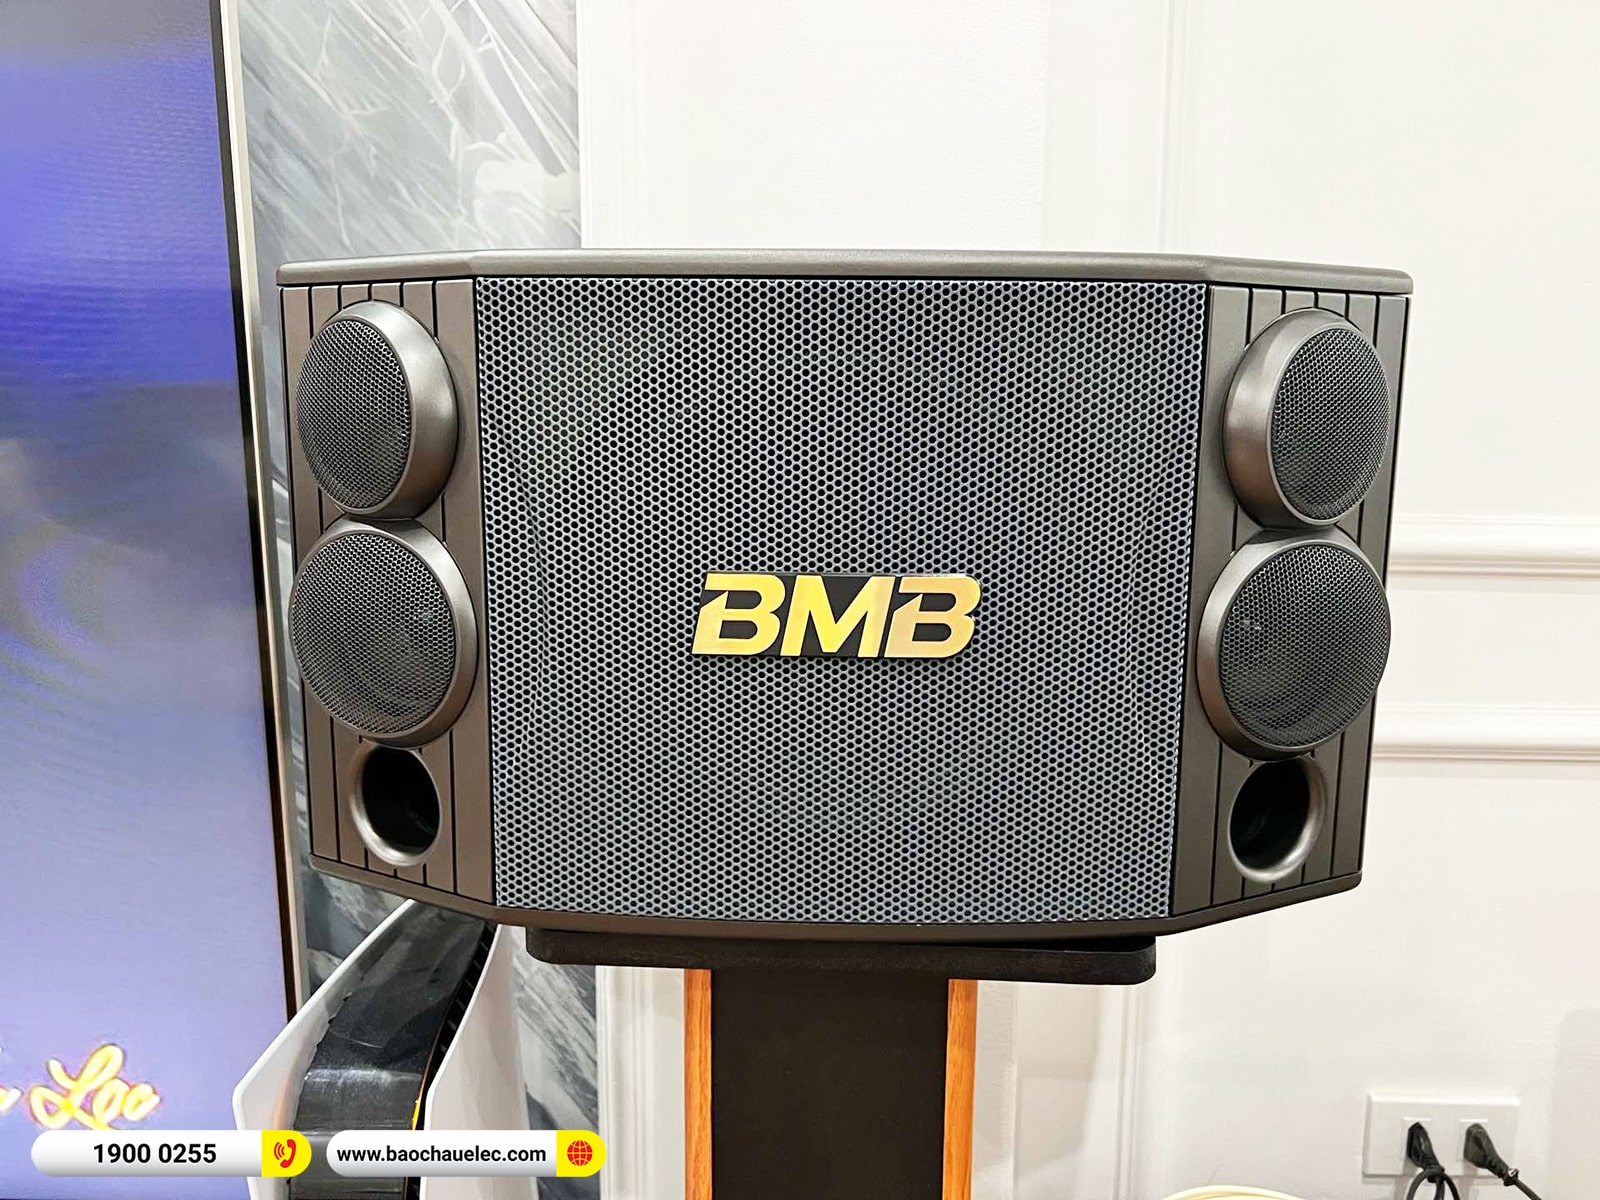 Lắp đặt dàn karaoke BMB gần 75tr cho chị An tại Hà Nội (BMB 880SE, DAD 950, KSP-50, WB-5000S,…) 